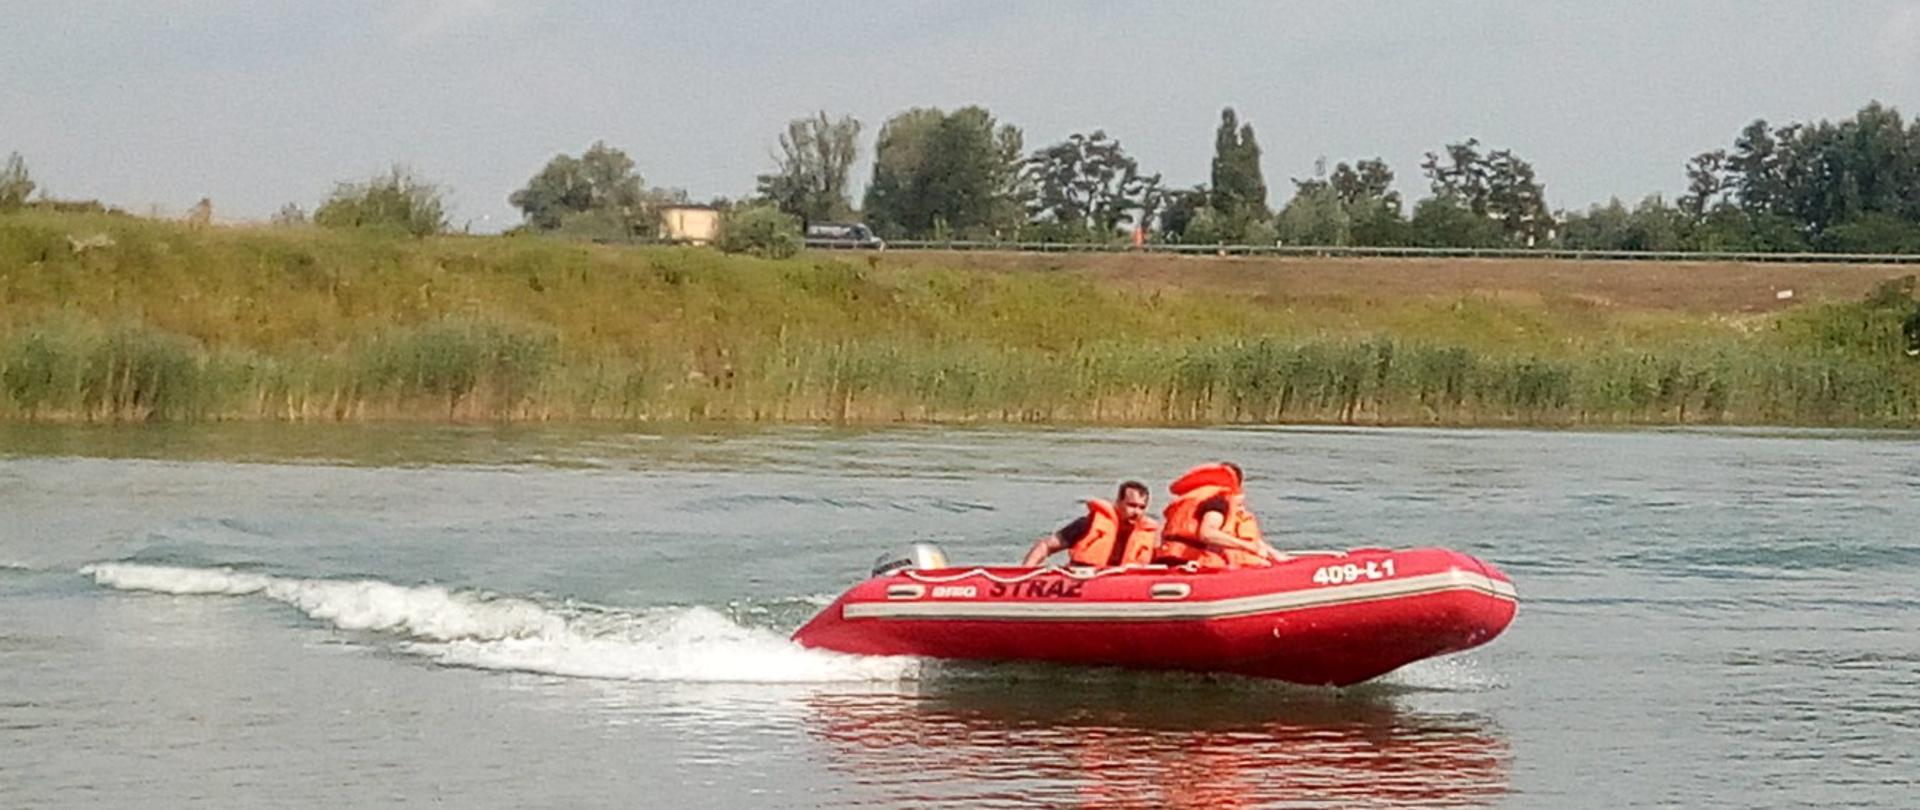 Zdjęcie ukazuje dwóch strażaków płynących pontonem po akwenie wodnym. Dwóch ratowników ubranych jest w pomarańczowe kamizelki asekuracyjne. 